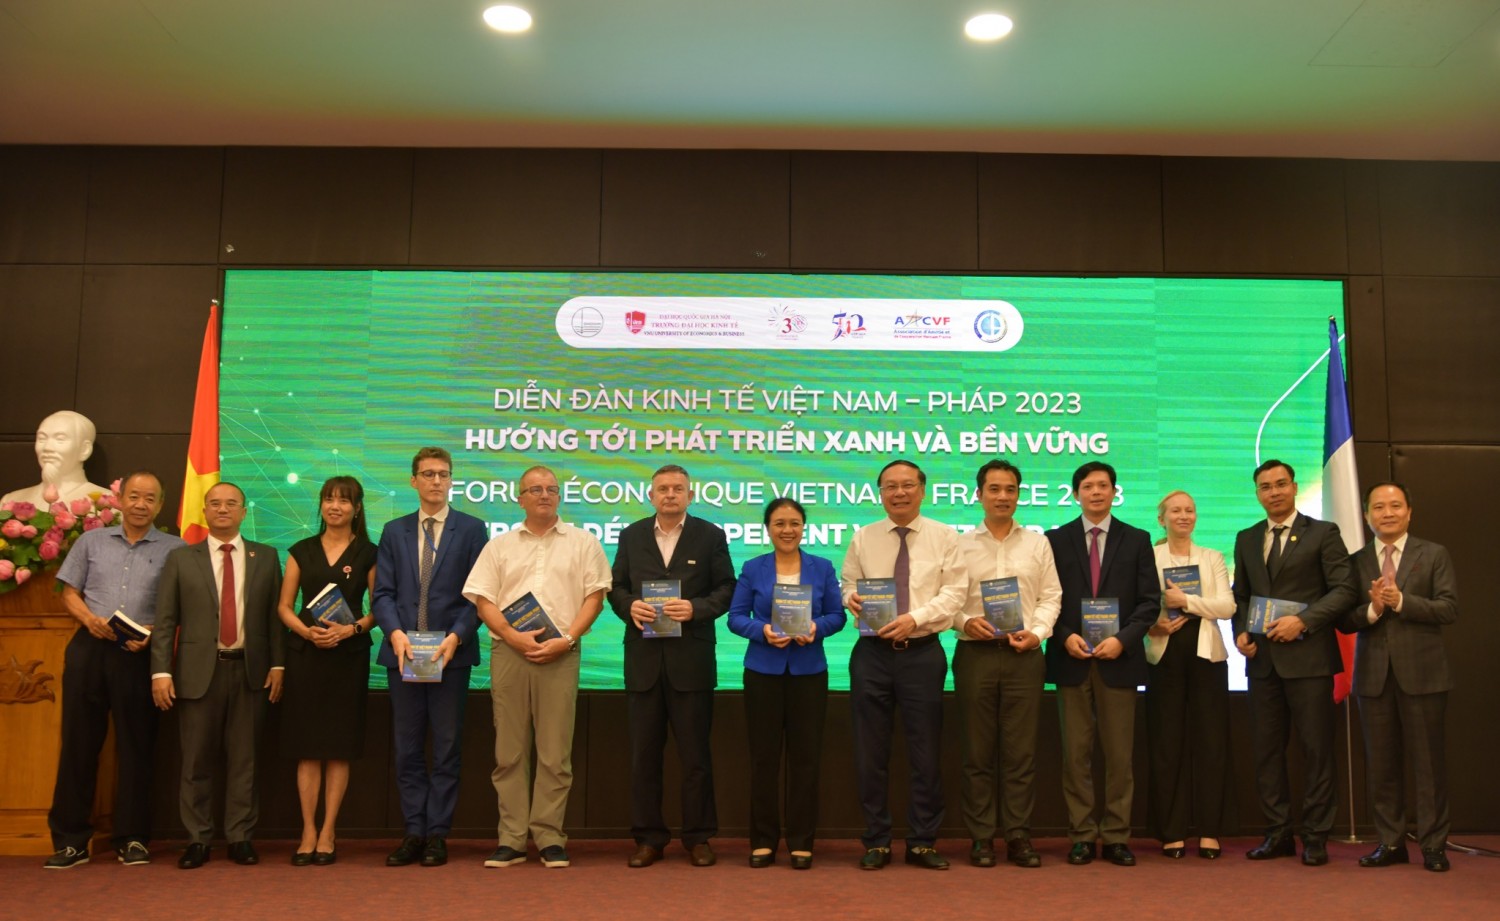 Trường Đại học Kinh tế, ĐHQGHN trao tặng Cuốn sách Kinh tế Việt Nam – Pháp: Hướng tới phát triển xanh và bền vững cho các đại biểu